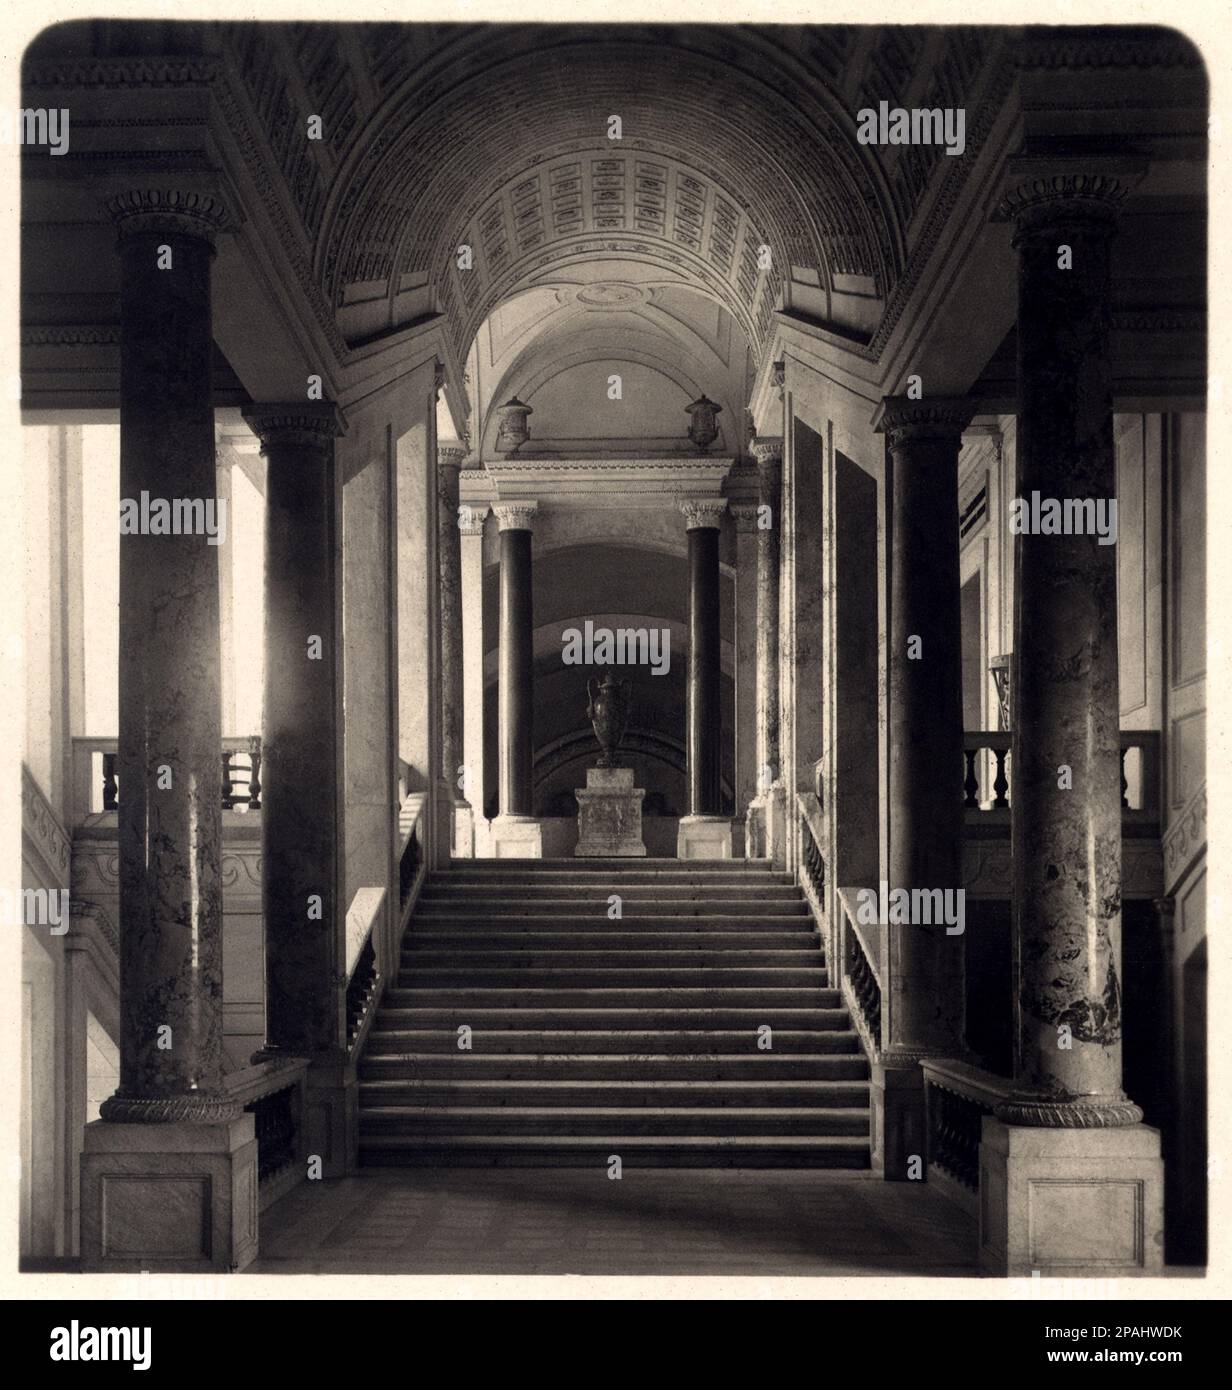 1908 , CITTA' DEL VATICANO , ROMA , ITALY :  SCALA DEI MUSEI , Musei Vaticani . Photo by Neue Photographische Gesellschaft A.G. Steglitz , Berlin , Germany    - ITALIA - FOTO STORICHE - HISTORY - GEOGRAFIA - GEOGRAPHY -   - ARCHITETTURA - ARCHITECTURE - VATICAN TOWN - Museum - stairs  ---- Archivio GBB Stock Photo